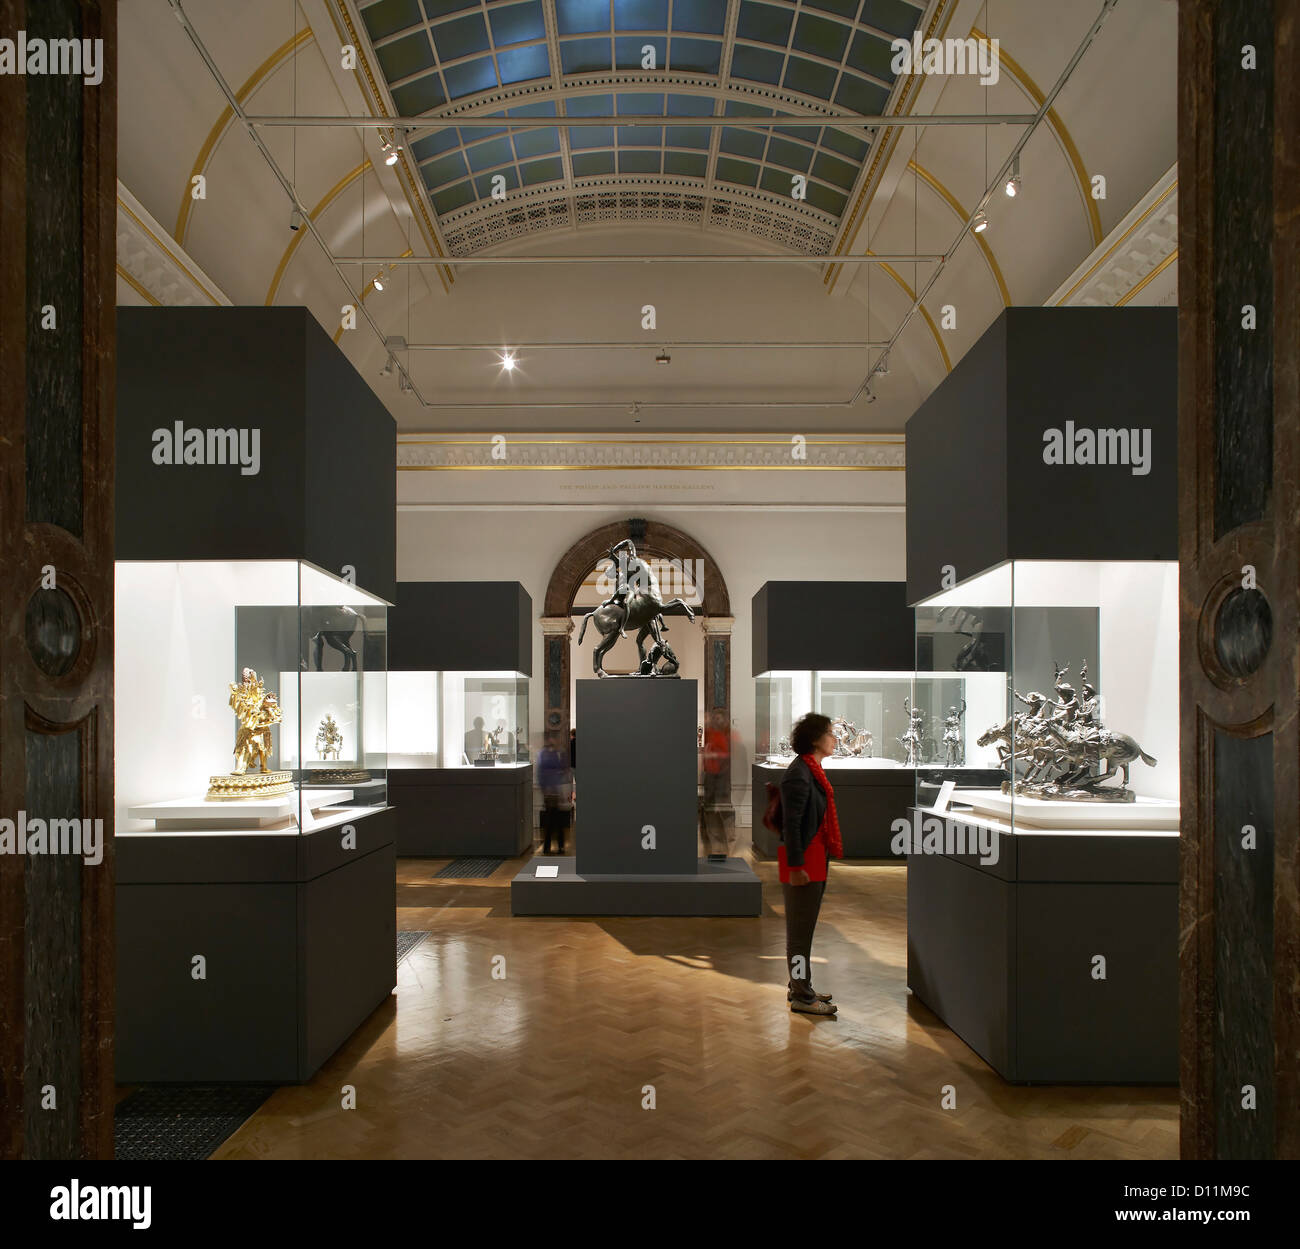 Royal Academy mostra di bronzo, Londra, Regno Unito. Architetto: Stanton Williams, 2012. Sala esposizioni con soffitto a volta skyligh Foto Stock